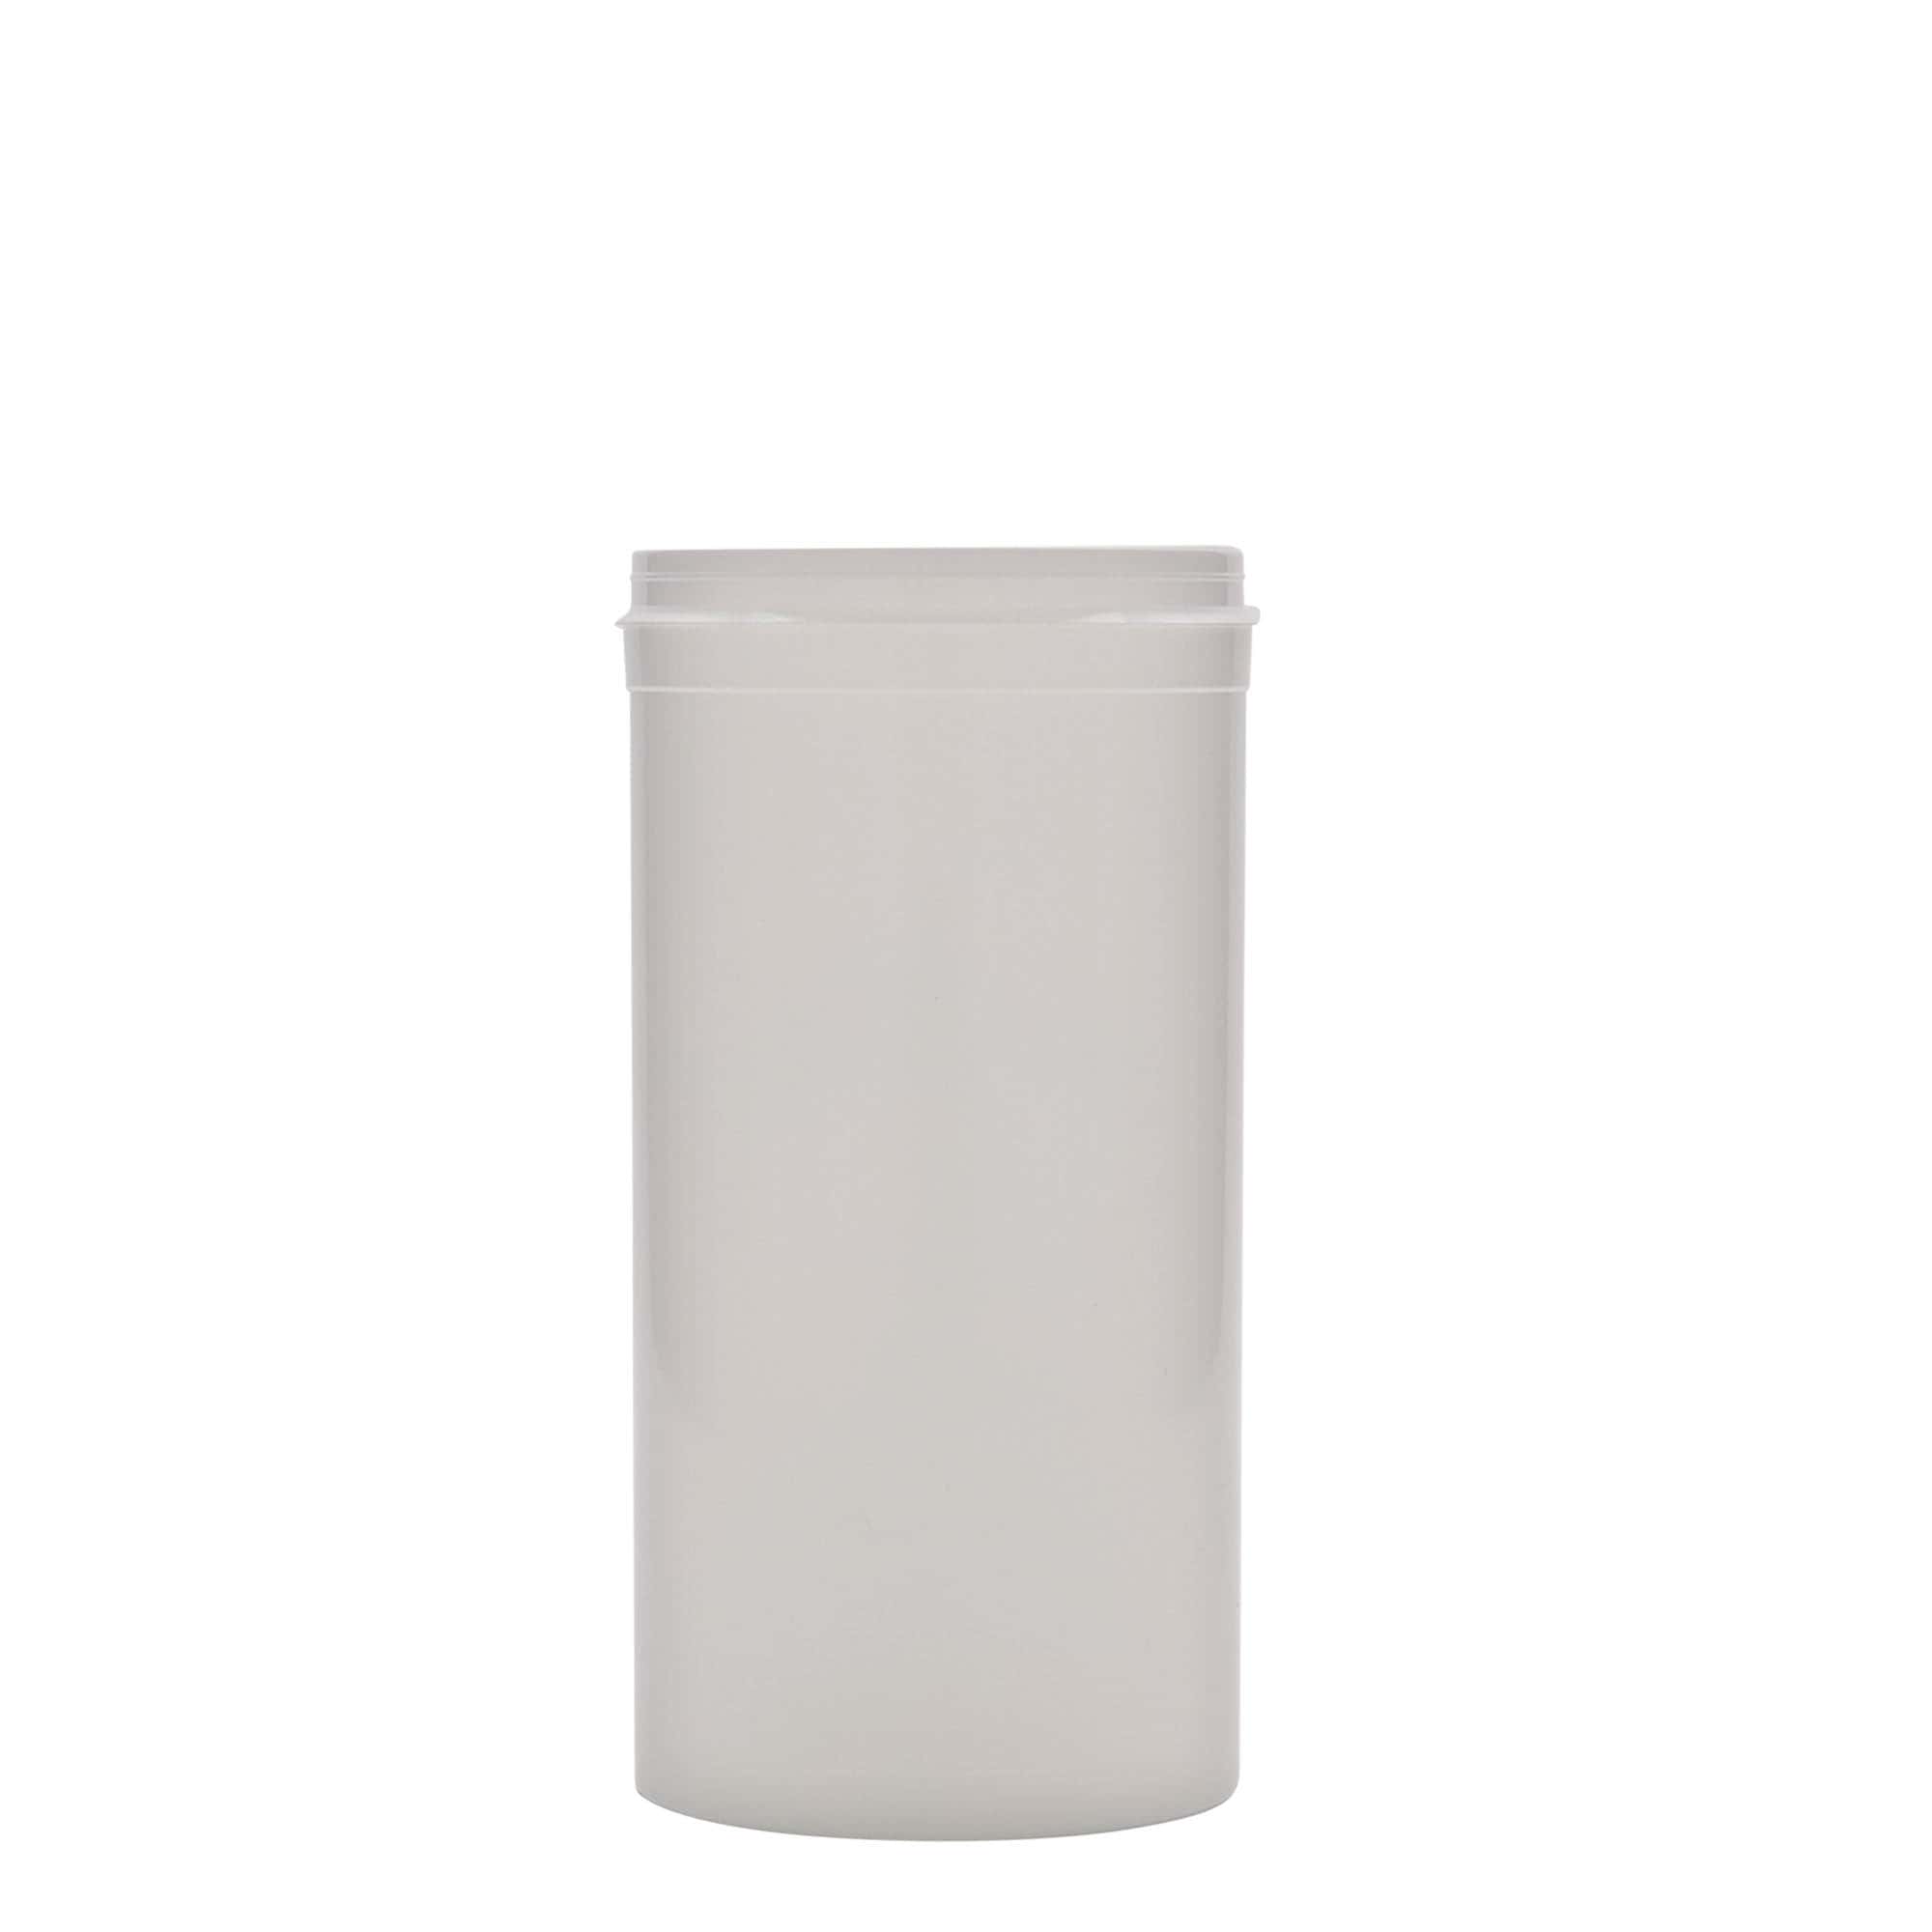 655 ml Dispenserflasche 'Securibox', PP-Kunststoff, weiß, Mündung: Schraubverschluss